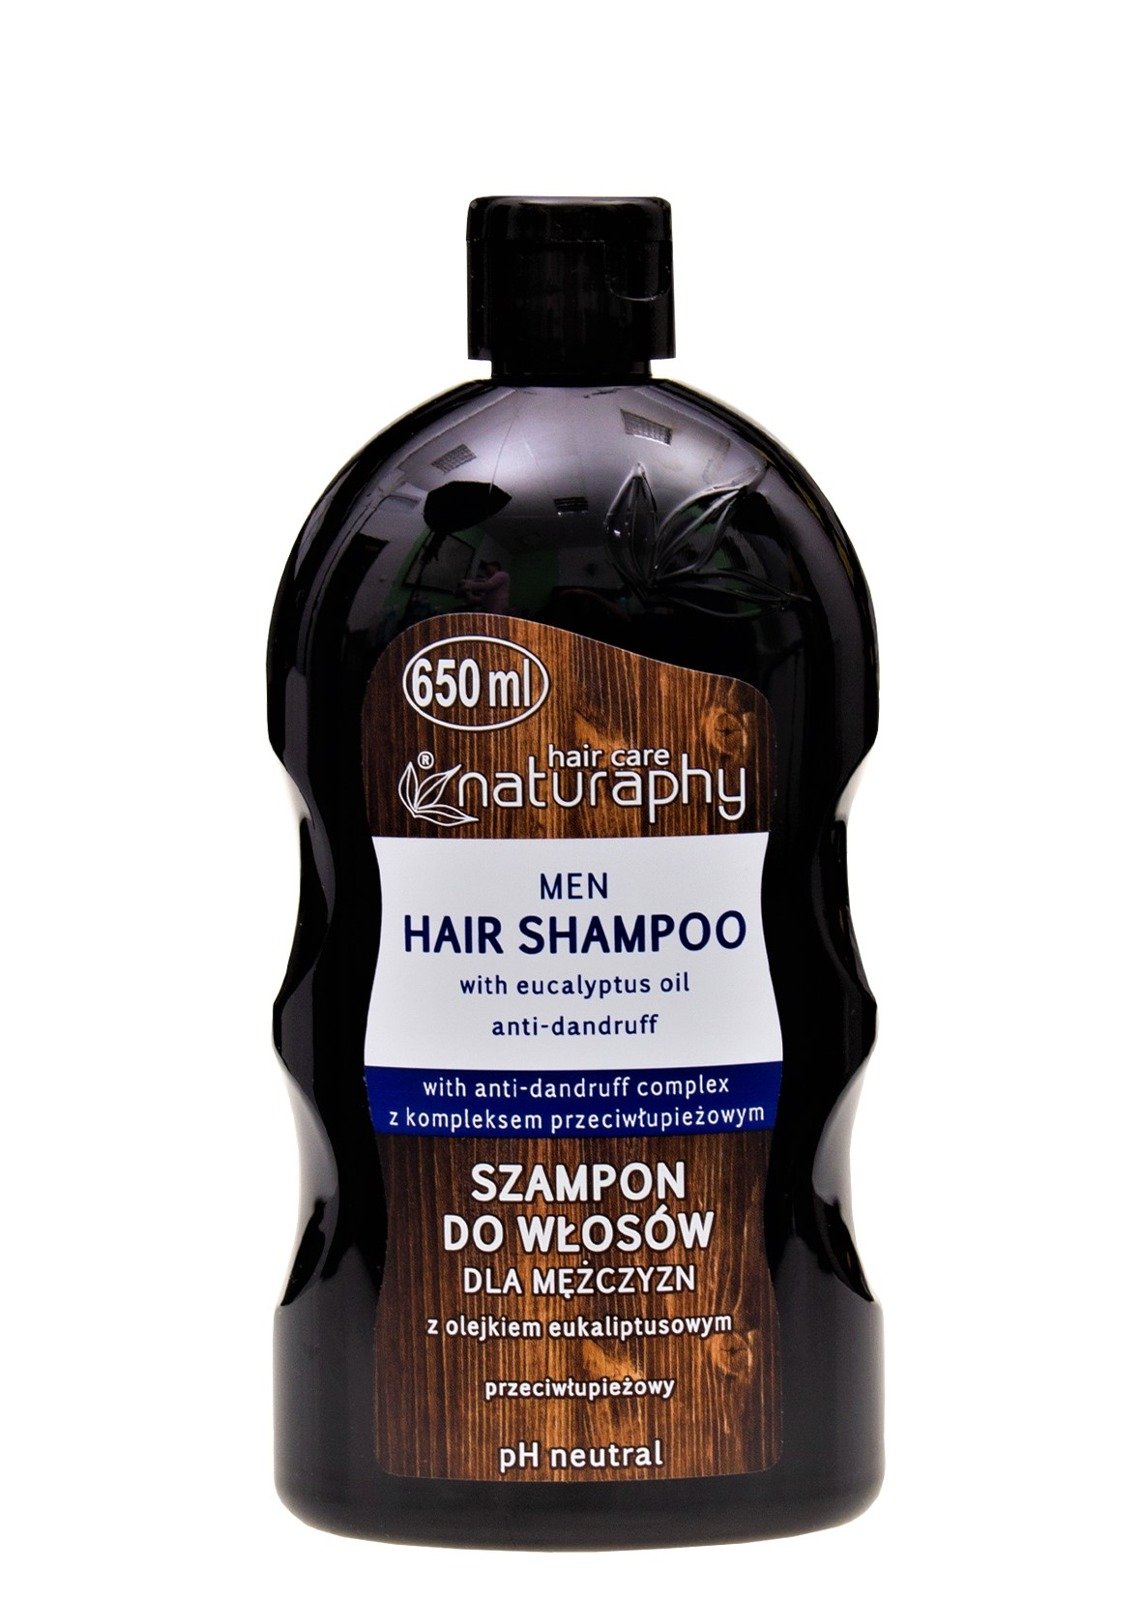 szampon dla mężczyzn do mycie włosów i samochodu